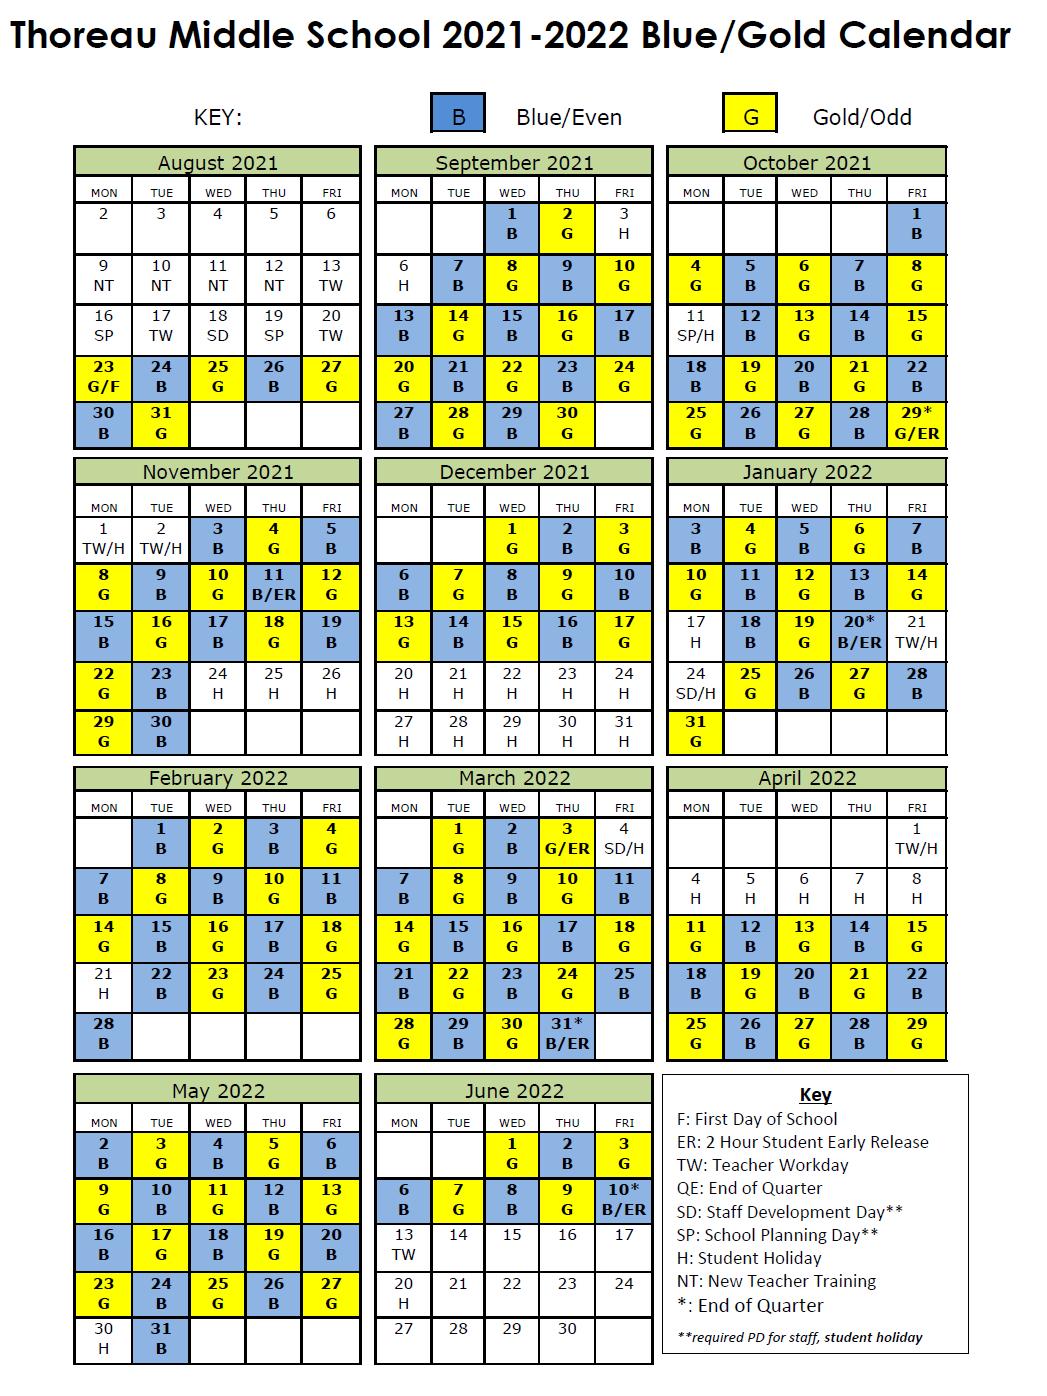 Blue/Gold Day Calendar Thoreau Middle School